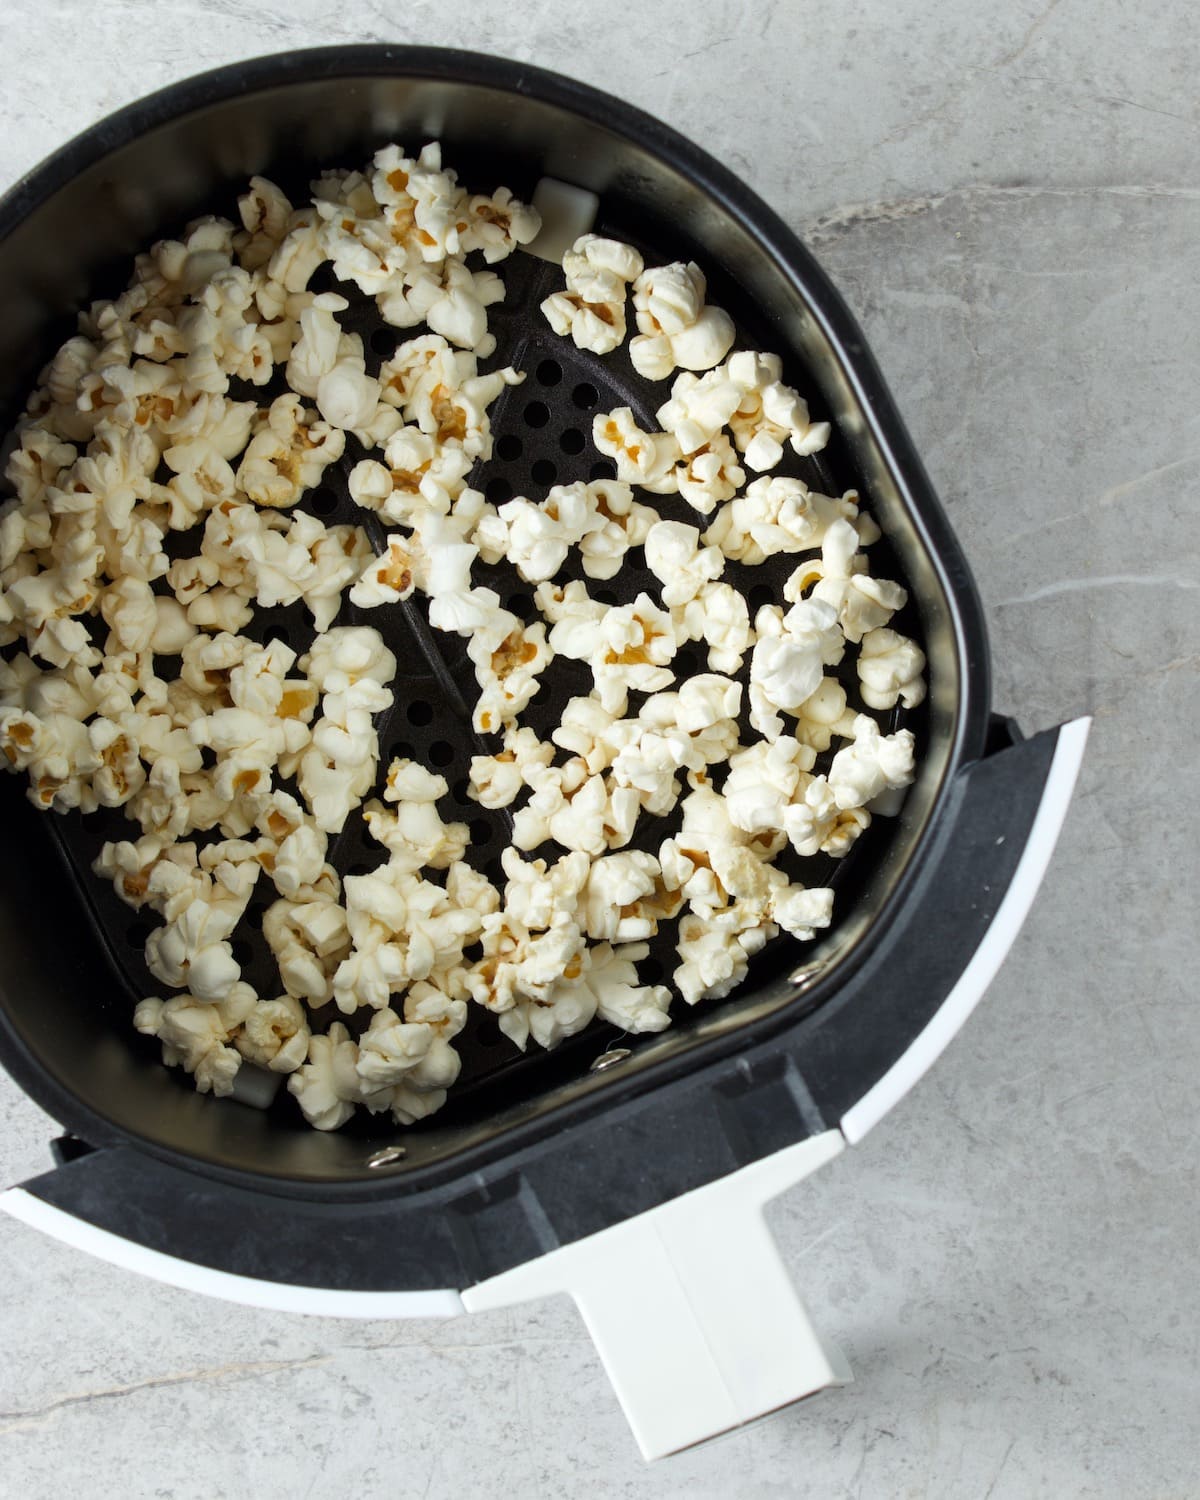 how do you reheat popcorn